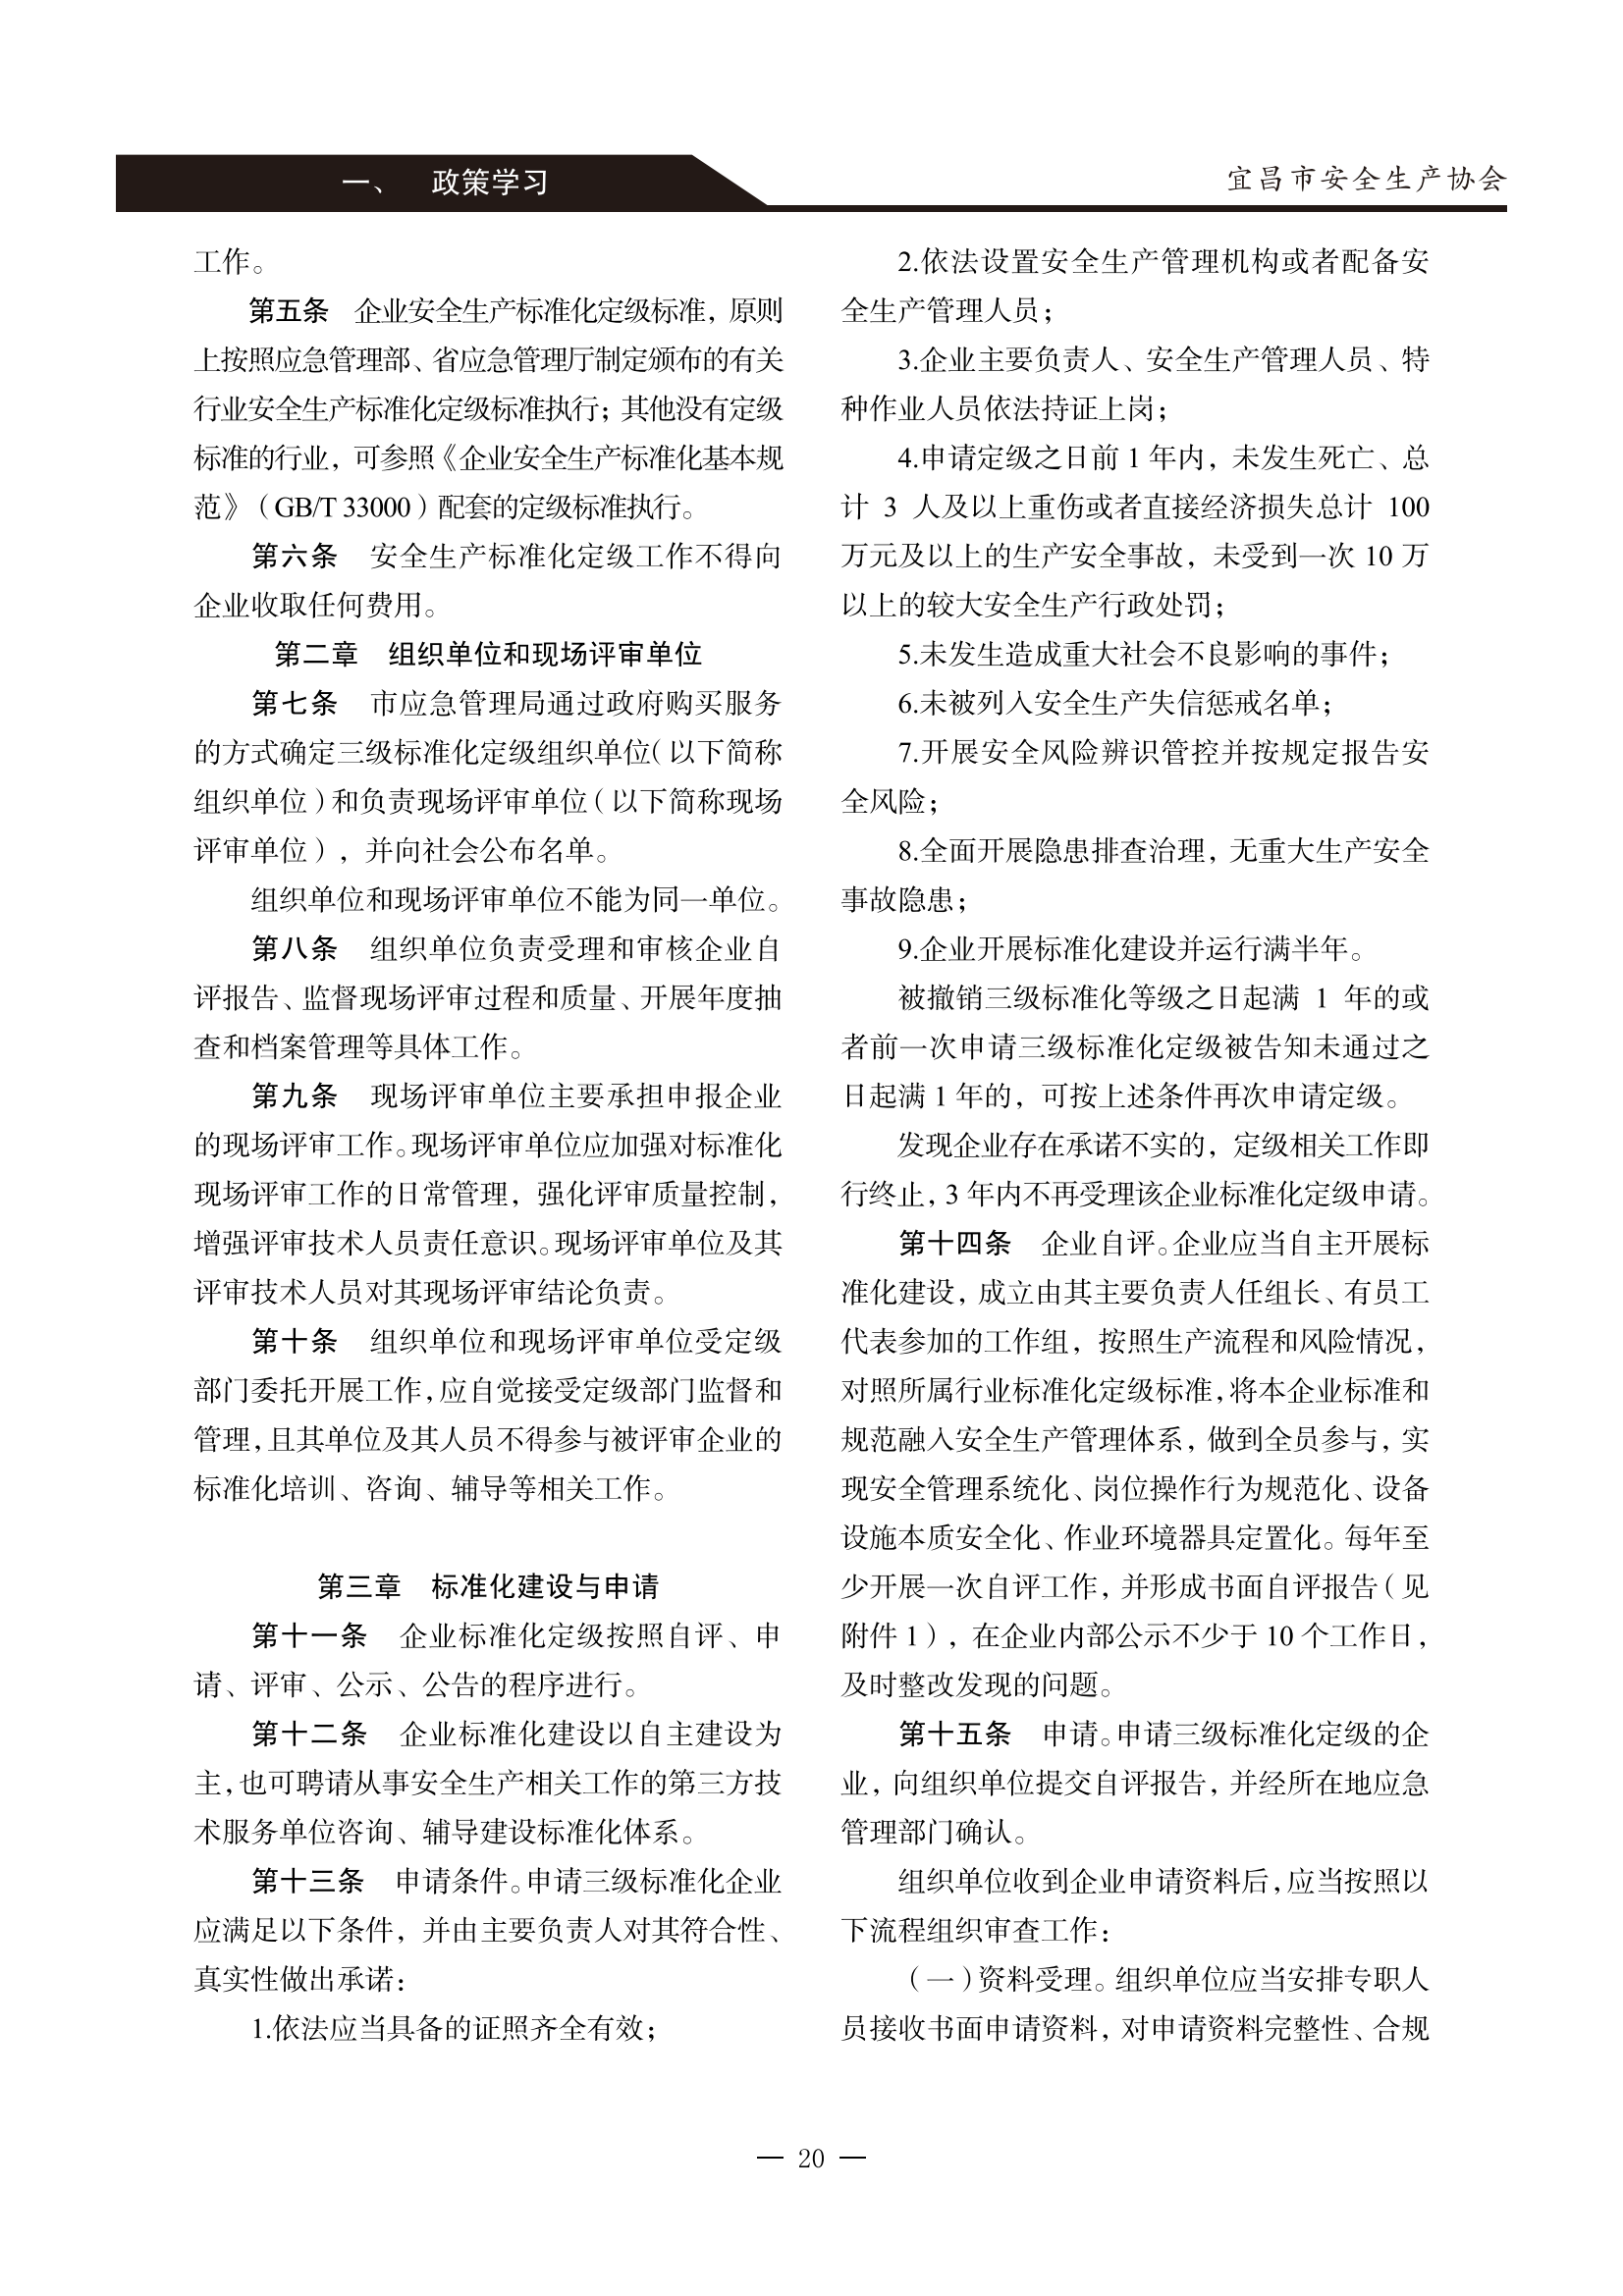 宜昌安全生产期刊第一期_25.png